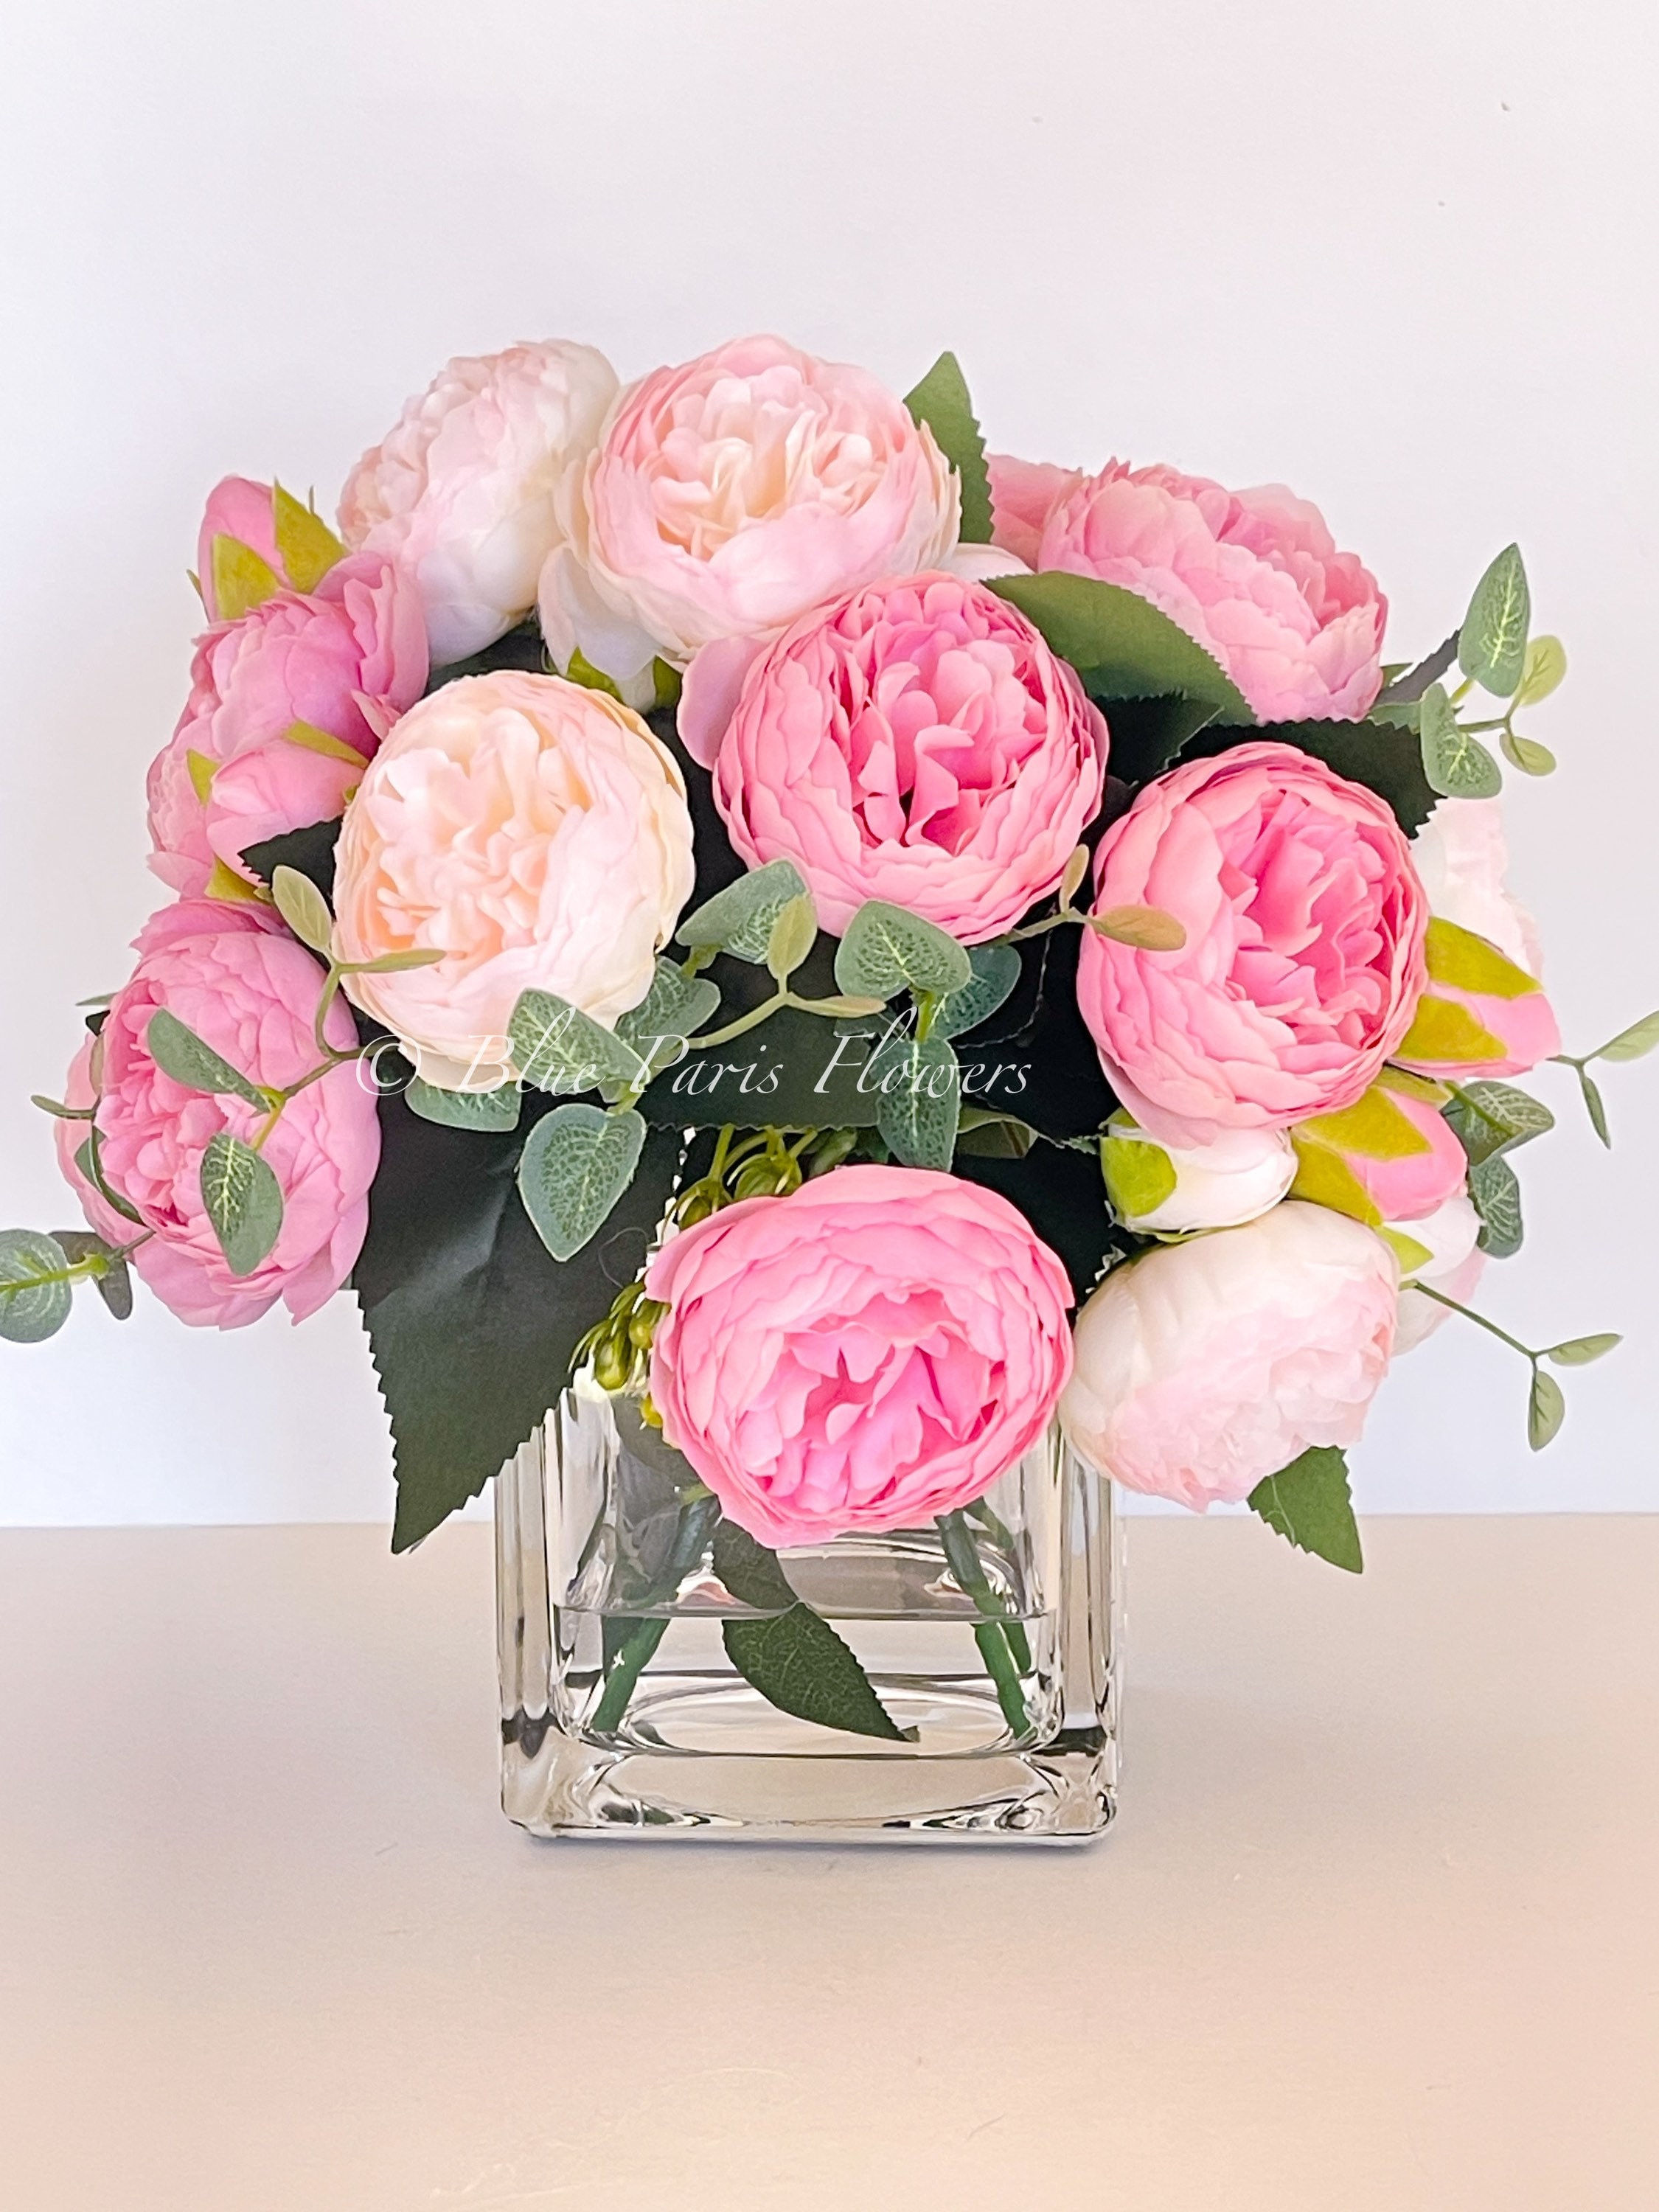 X-Large White Daisy Arrangement, Artificial Faux Centerpiece, Floral  Arrangement, Silk Flowers in Glass Vase for Home Decor